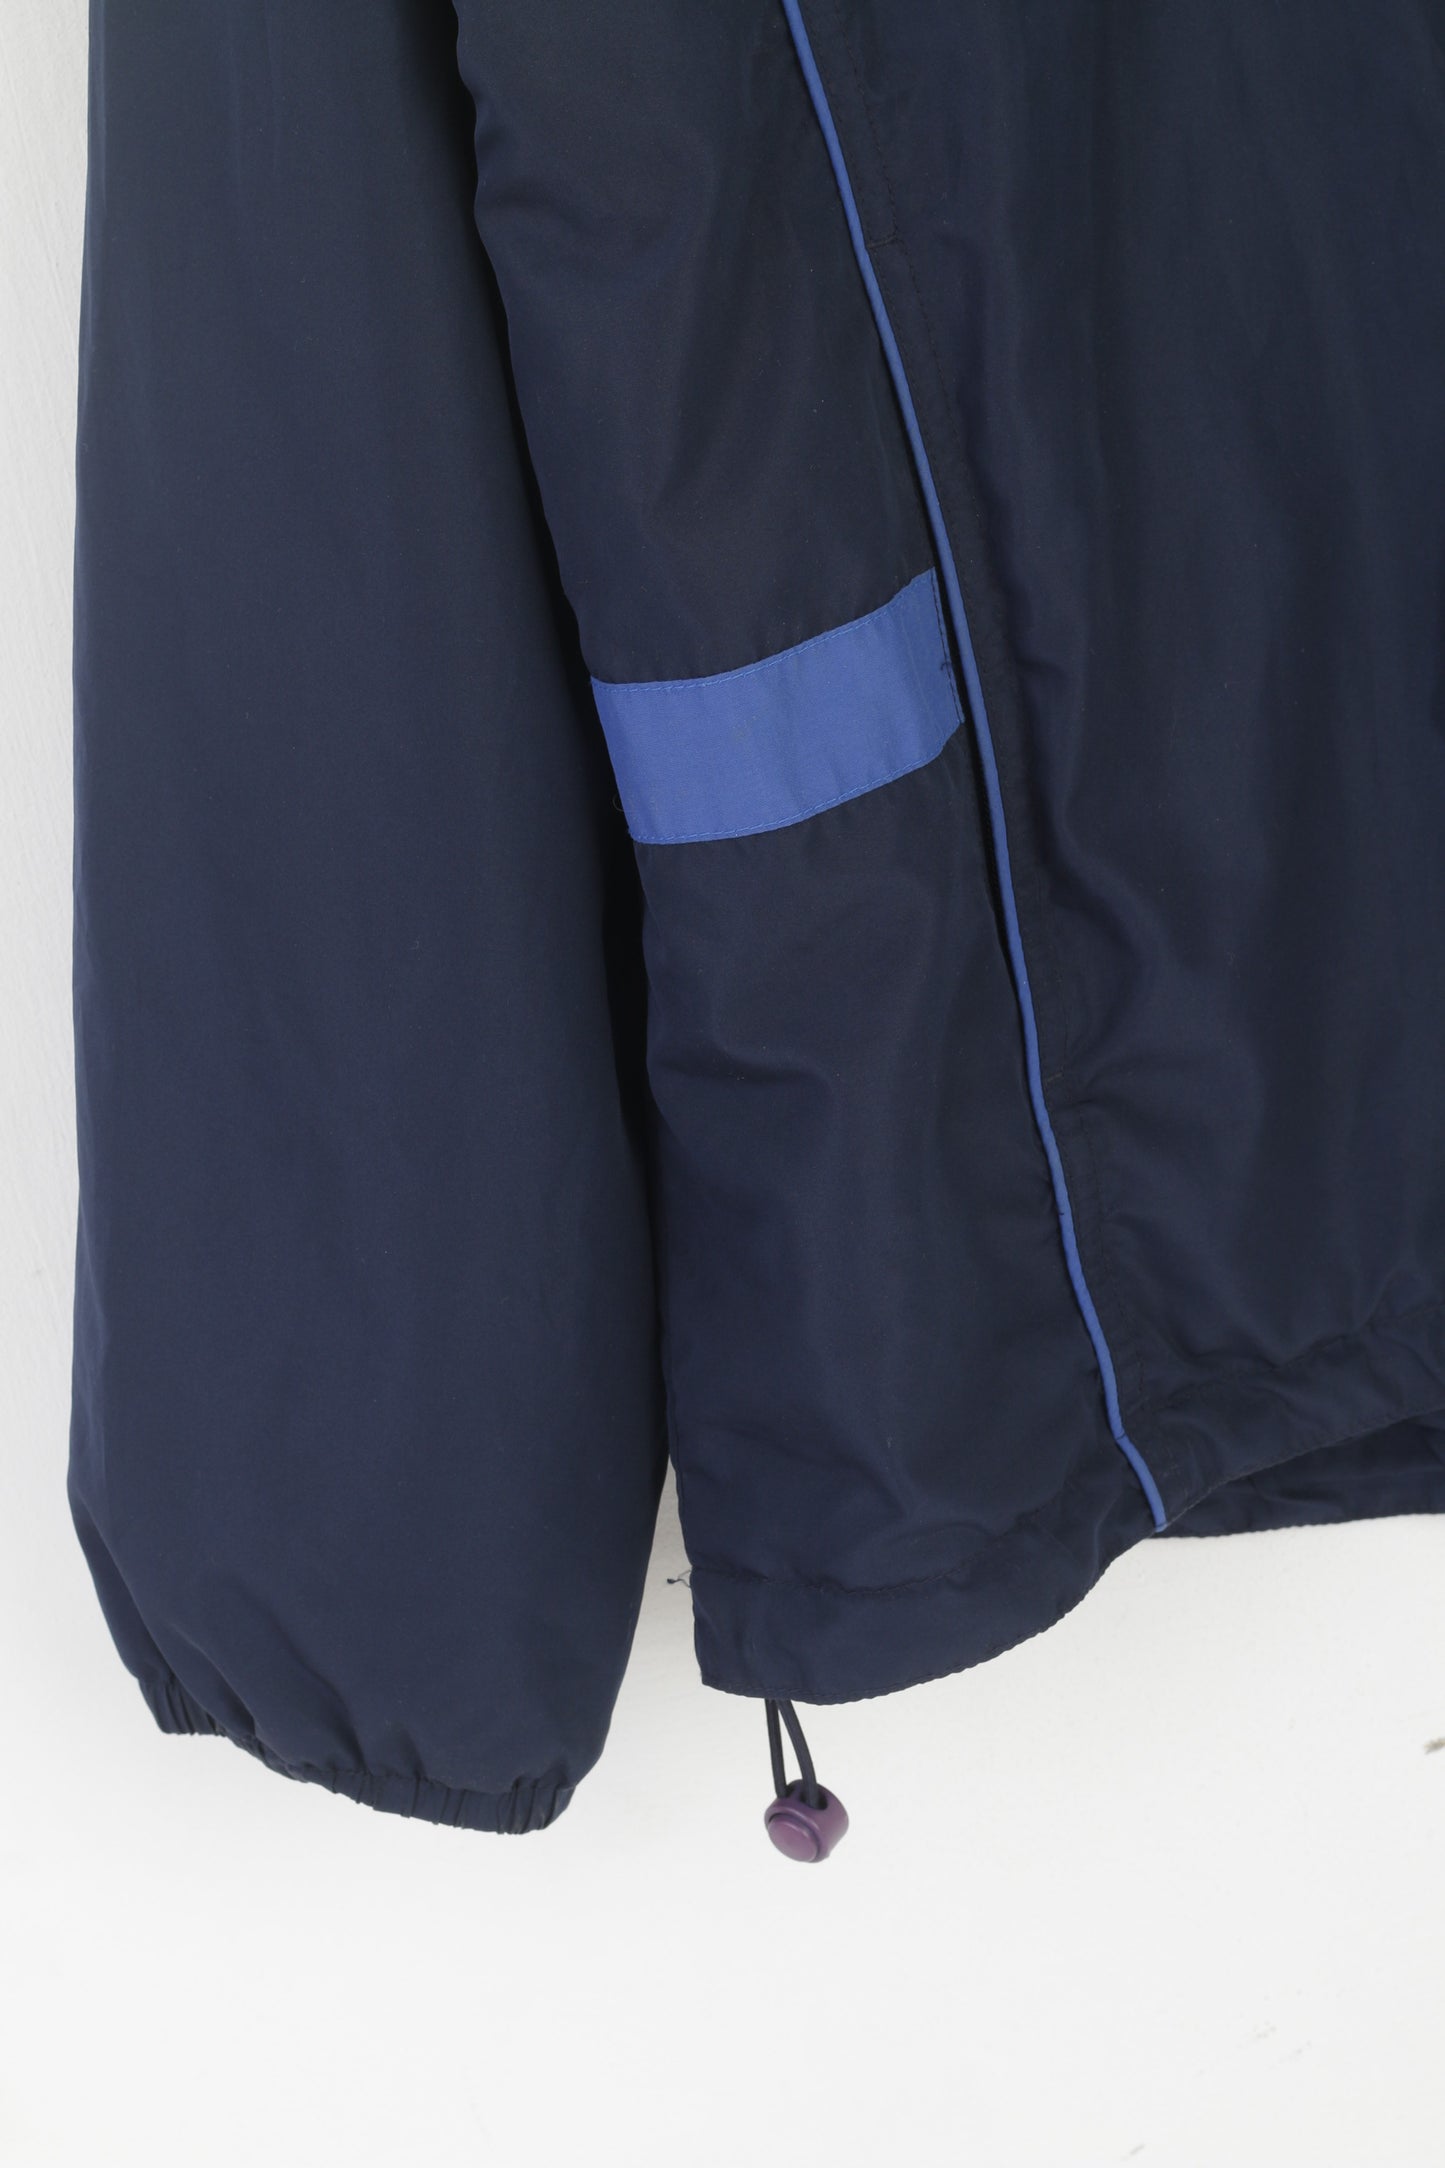 Kynningsrud Men XXXL Jacket Navy Nylon Activewear Hidden Hood Zip Up Top